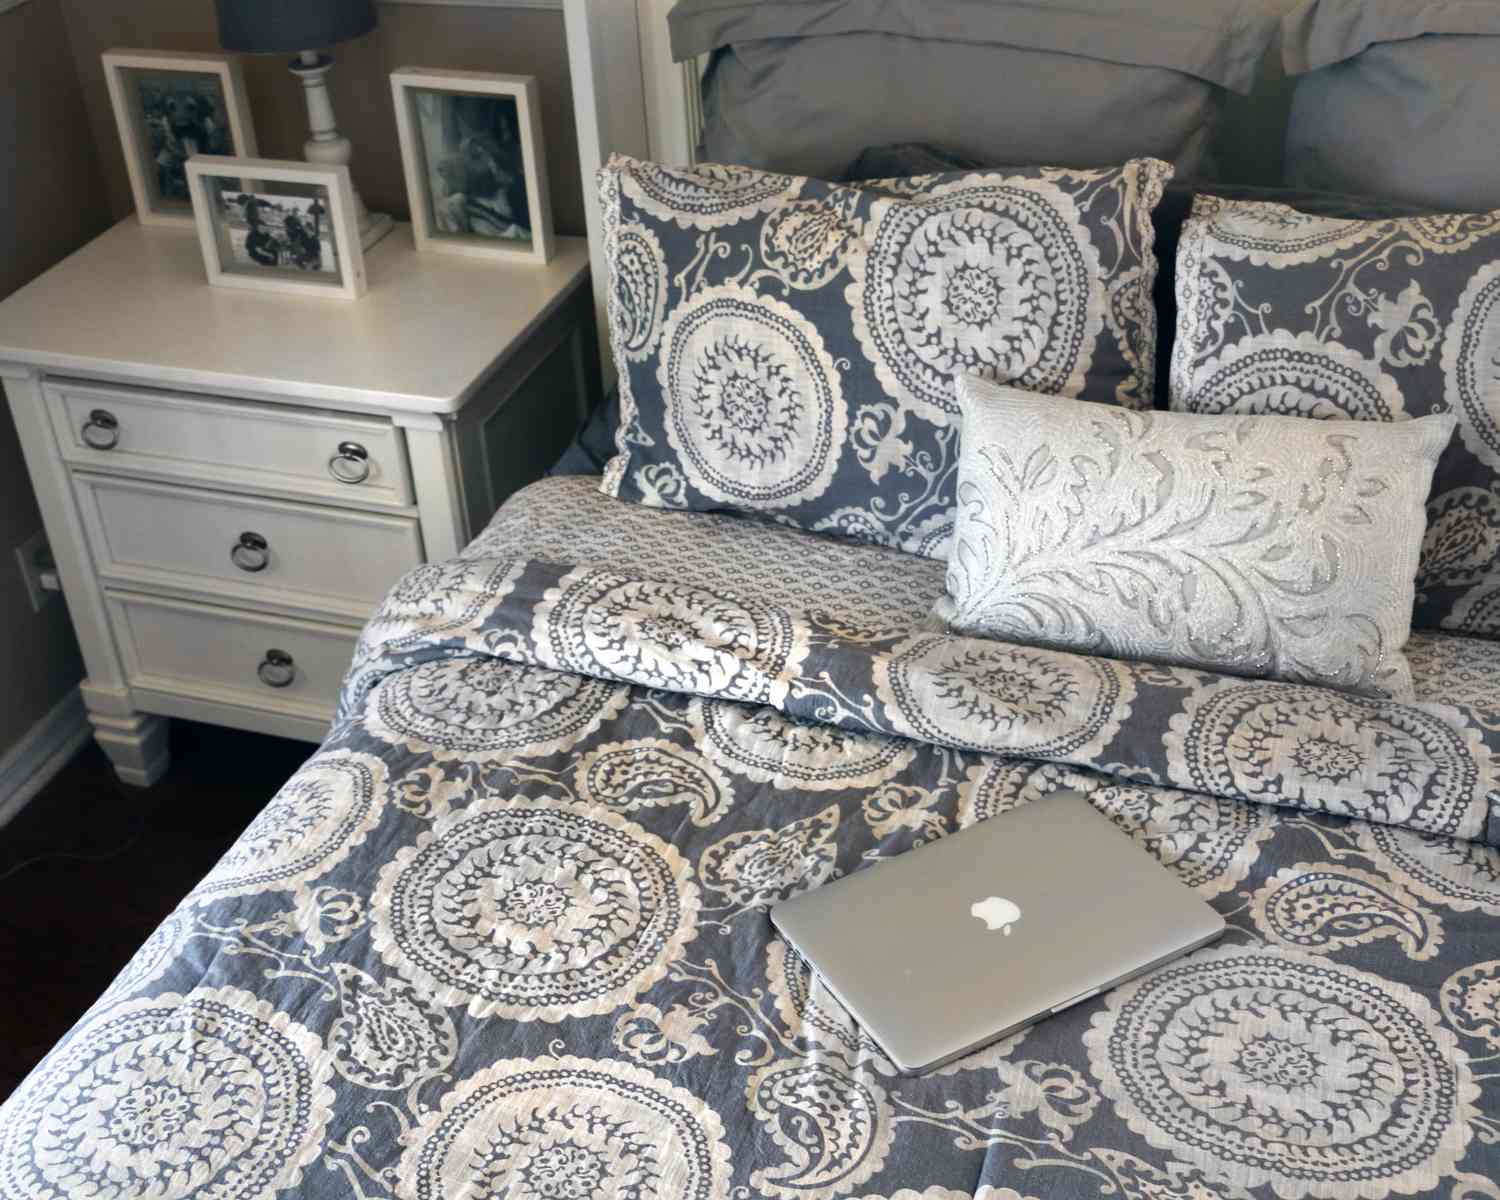 Neue Drucke und Muster in der Bettwäsche können jedes Schlafzimmer aufpeppen